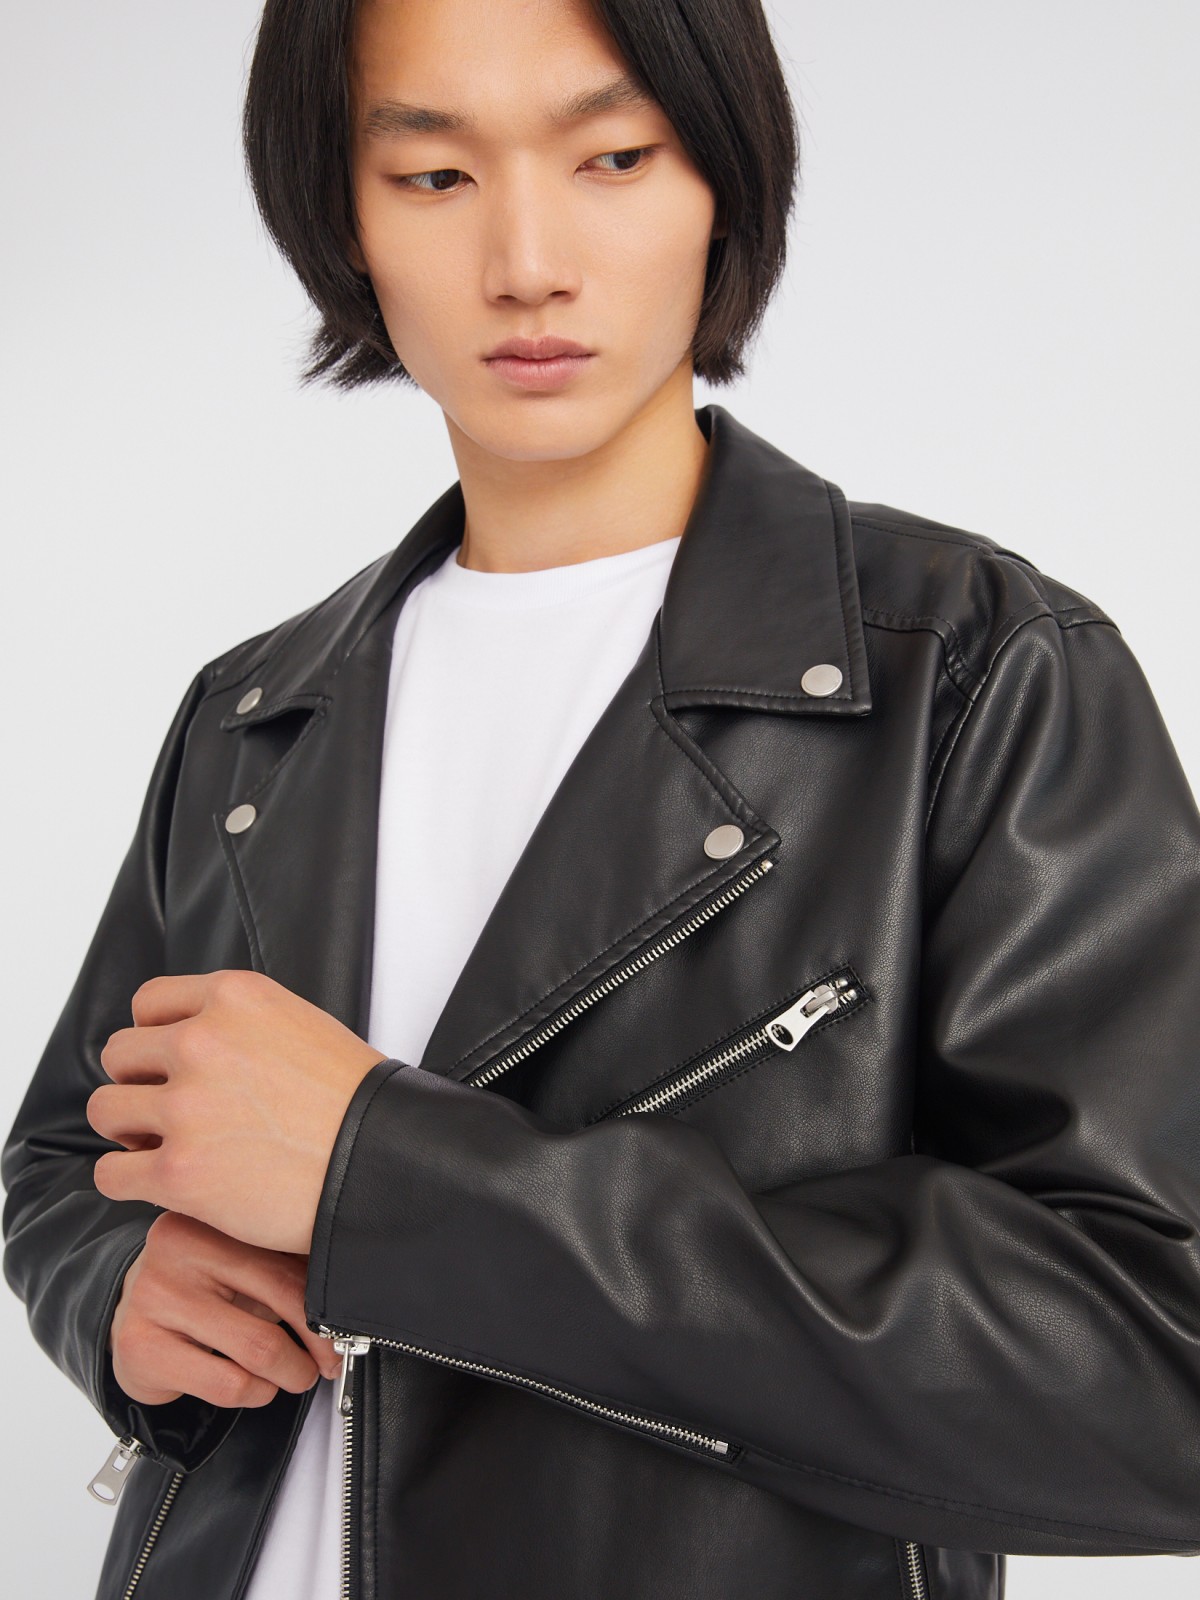 Кожаная куртка-косуха из экокожи без утеплителя zolla 013325650034, цвет черный, размер S - фото 3